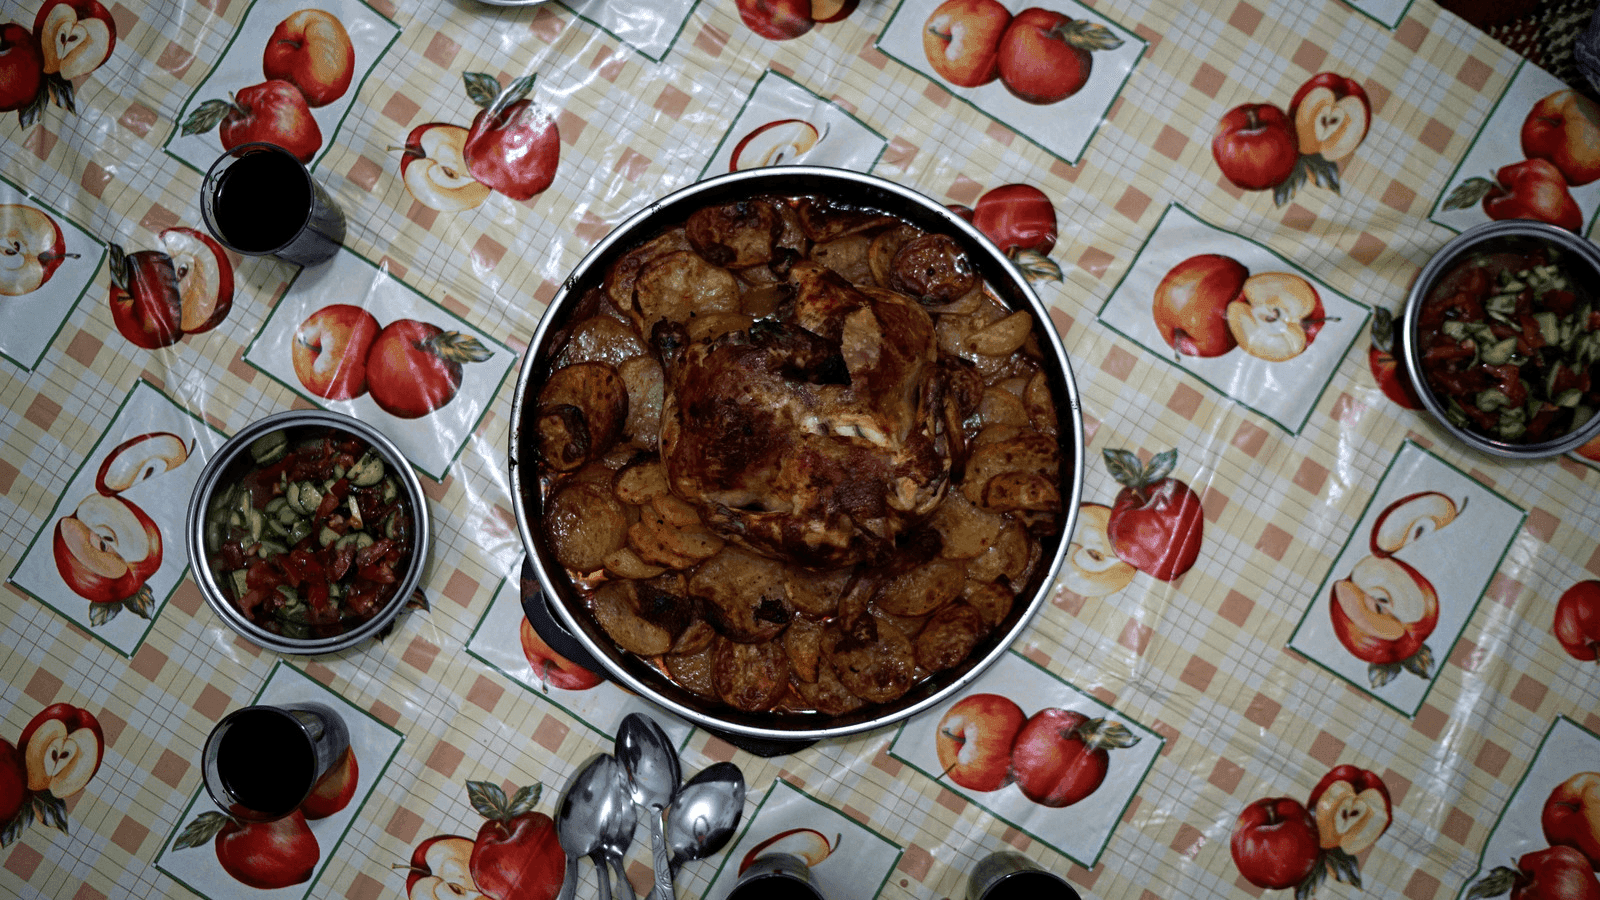 syrian food served in turkey